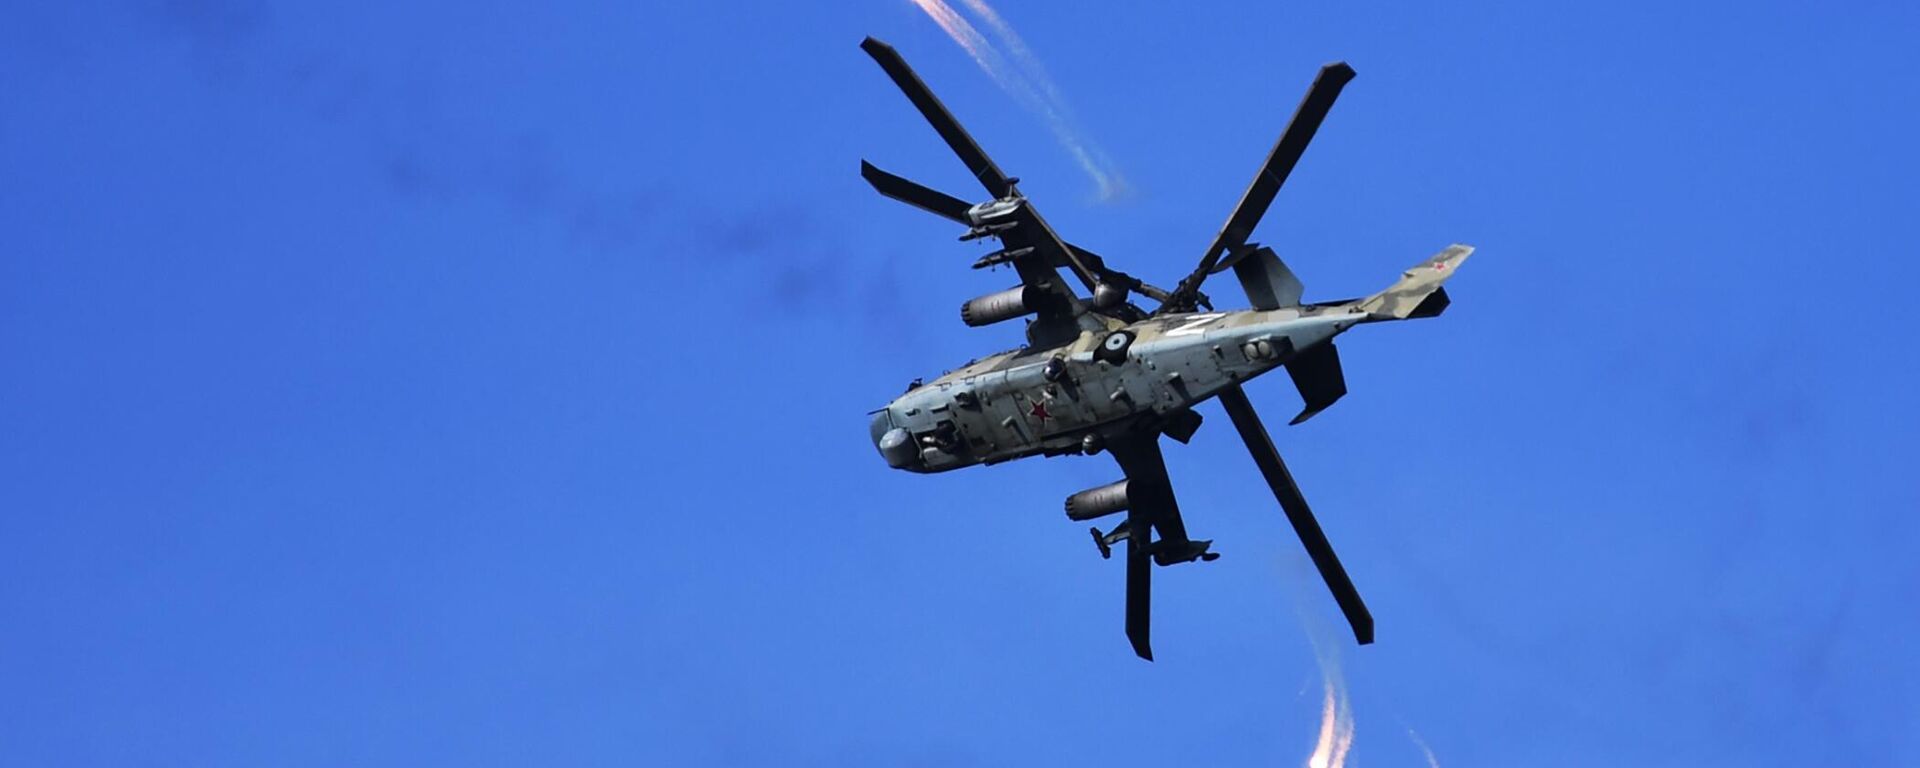 طائرة هليكوبتر من طراز كا-52 تطلق مصائد حرارية بعد إطلاقها النار على مواقع القوات المسلحة الأوكرانية في منطقة العملية العسكرية الخاصة في منطقة دونيتسك. - سبوتنيك عربي, 1920, 26.10.2023